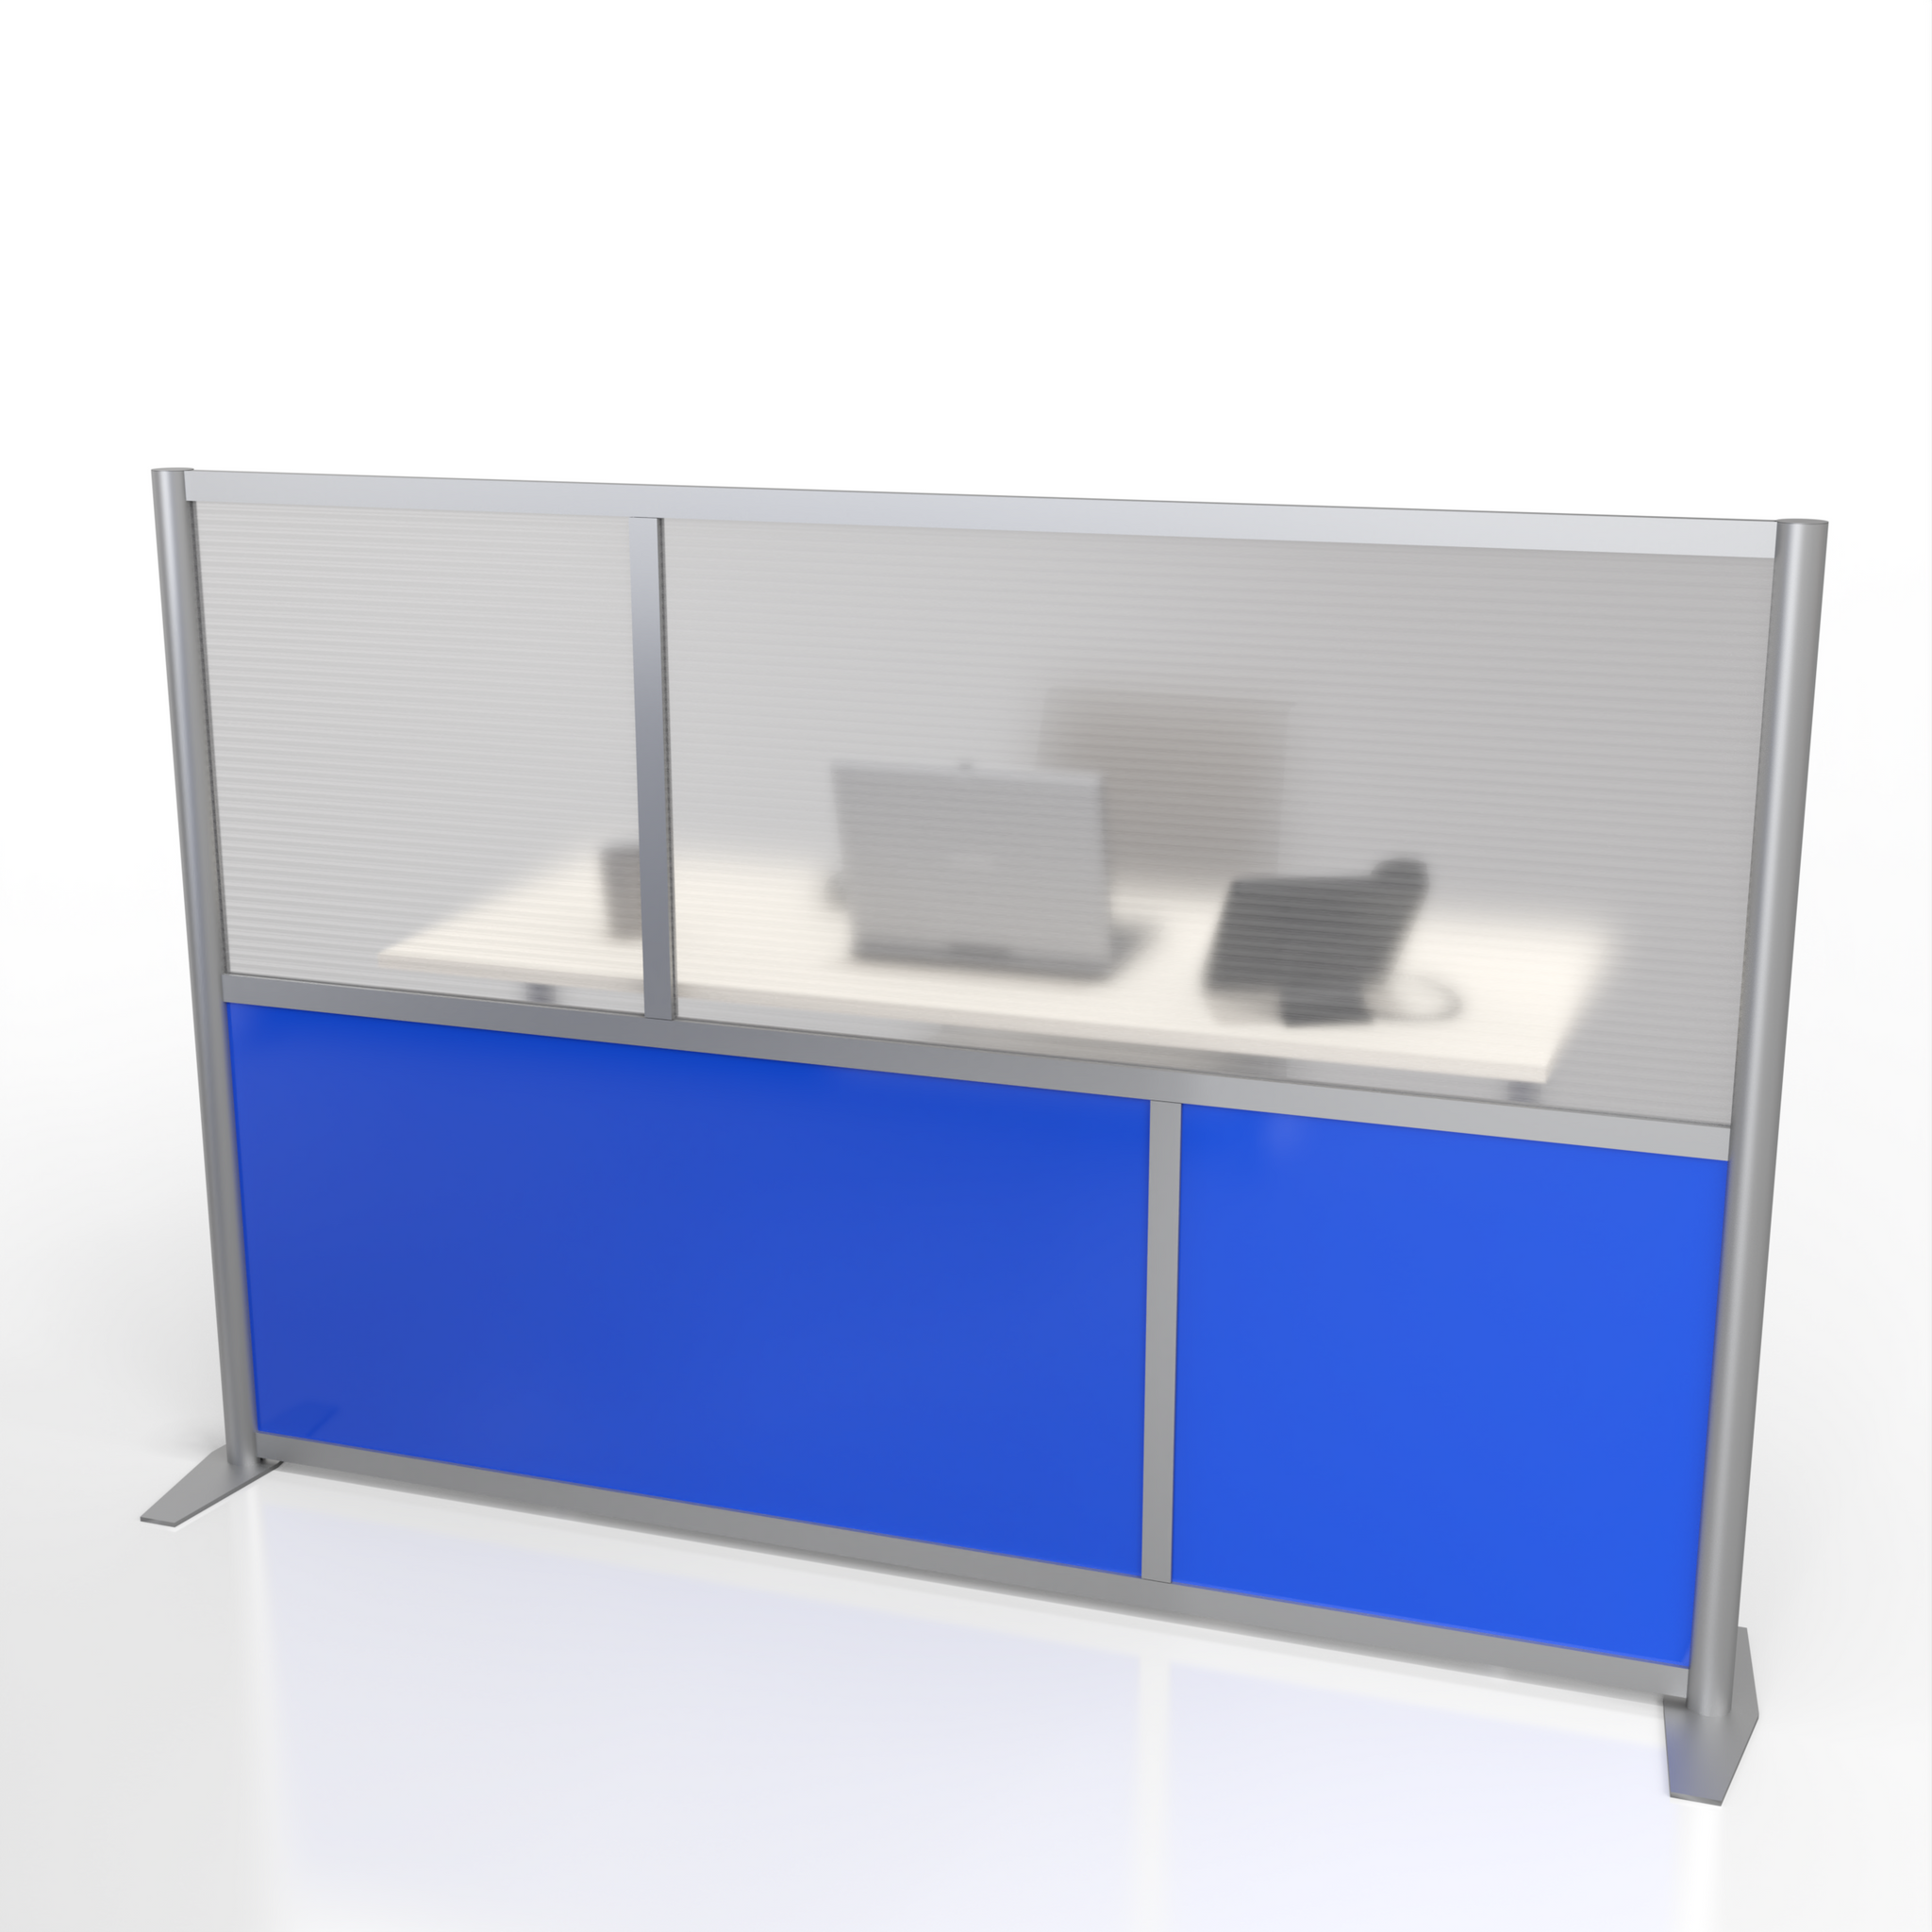 75" wide x 51" high Modern Office Partition Desk Divider - Blue & Translucent - Model SW8451-2